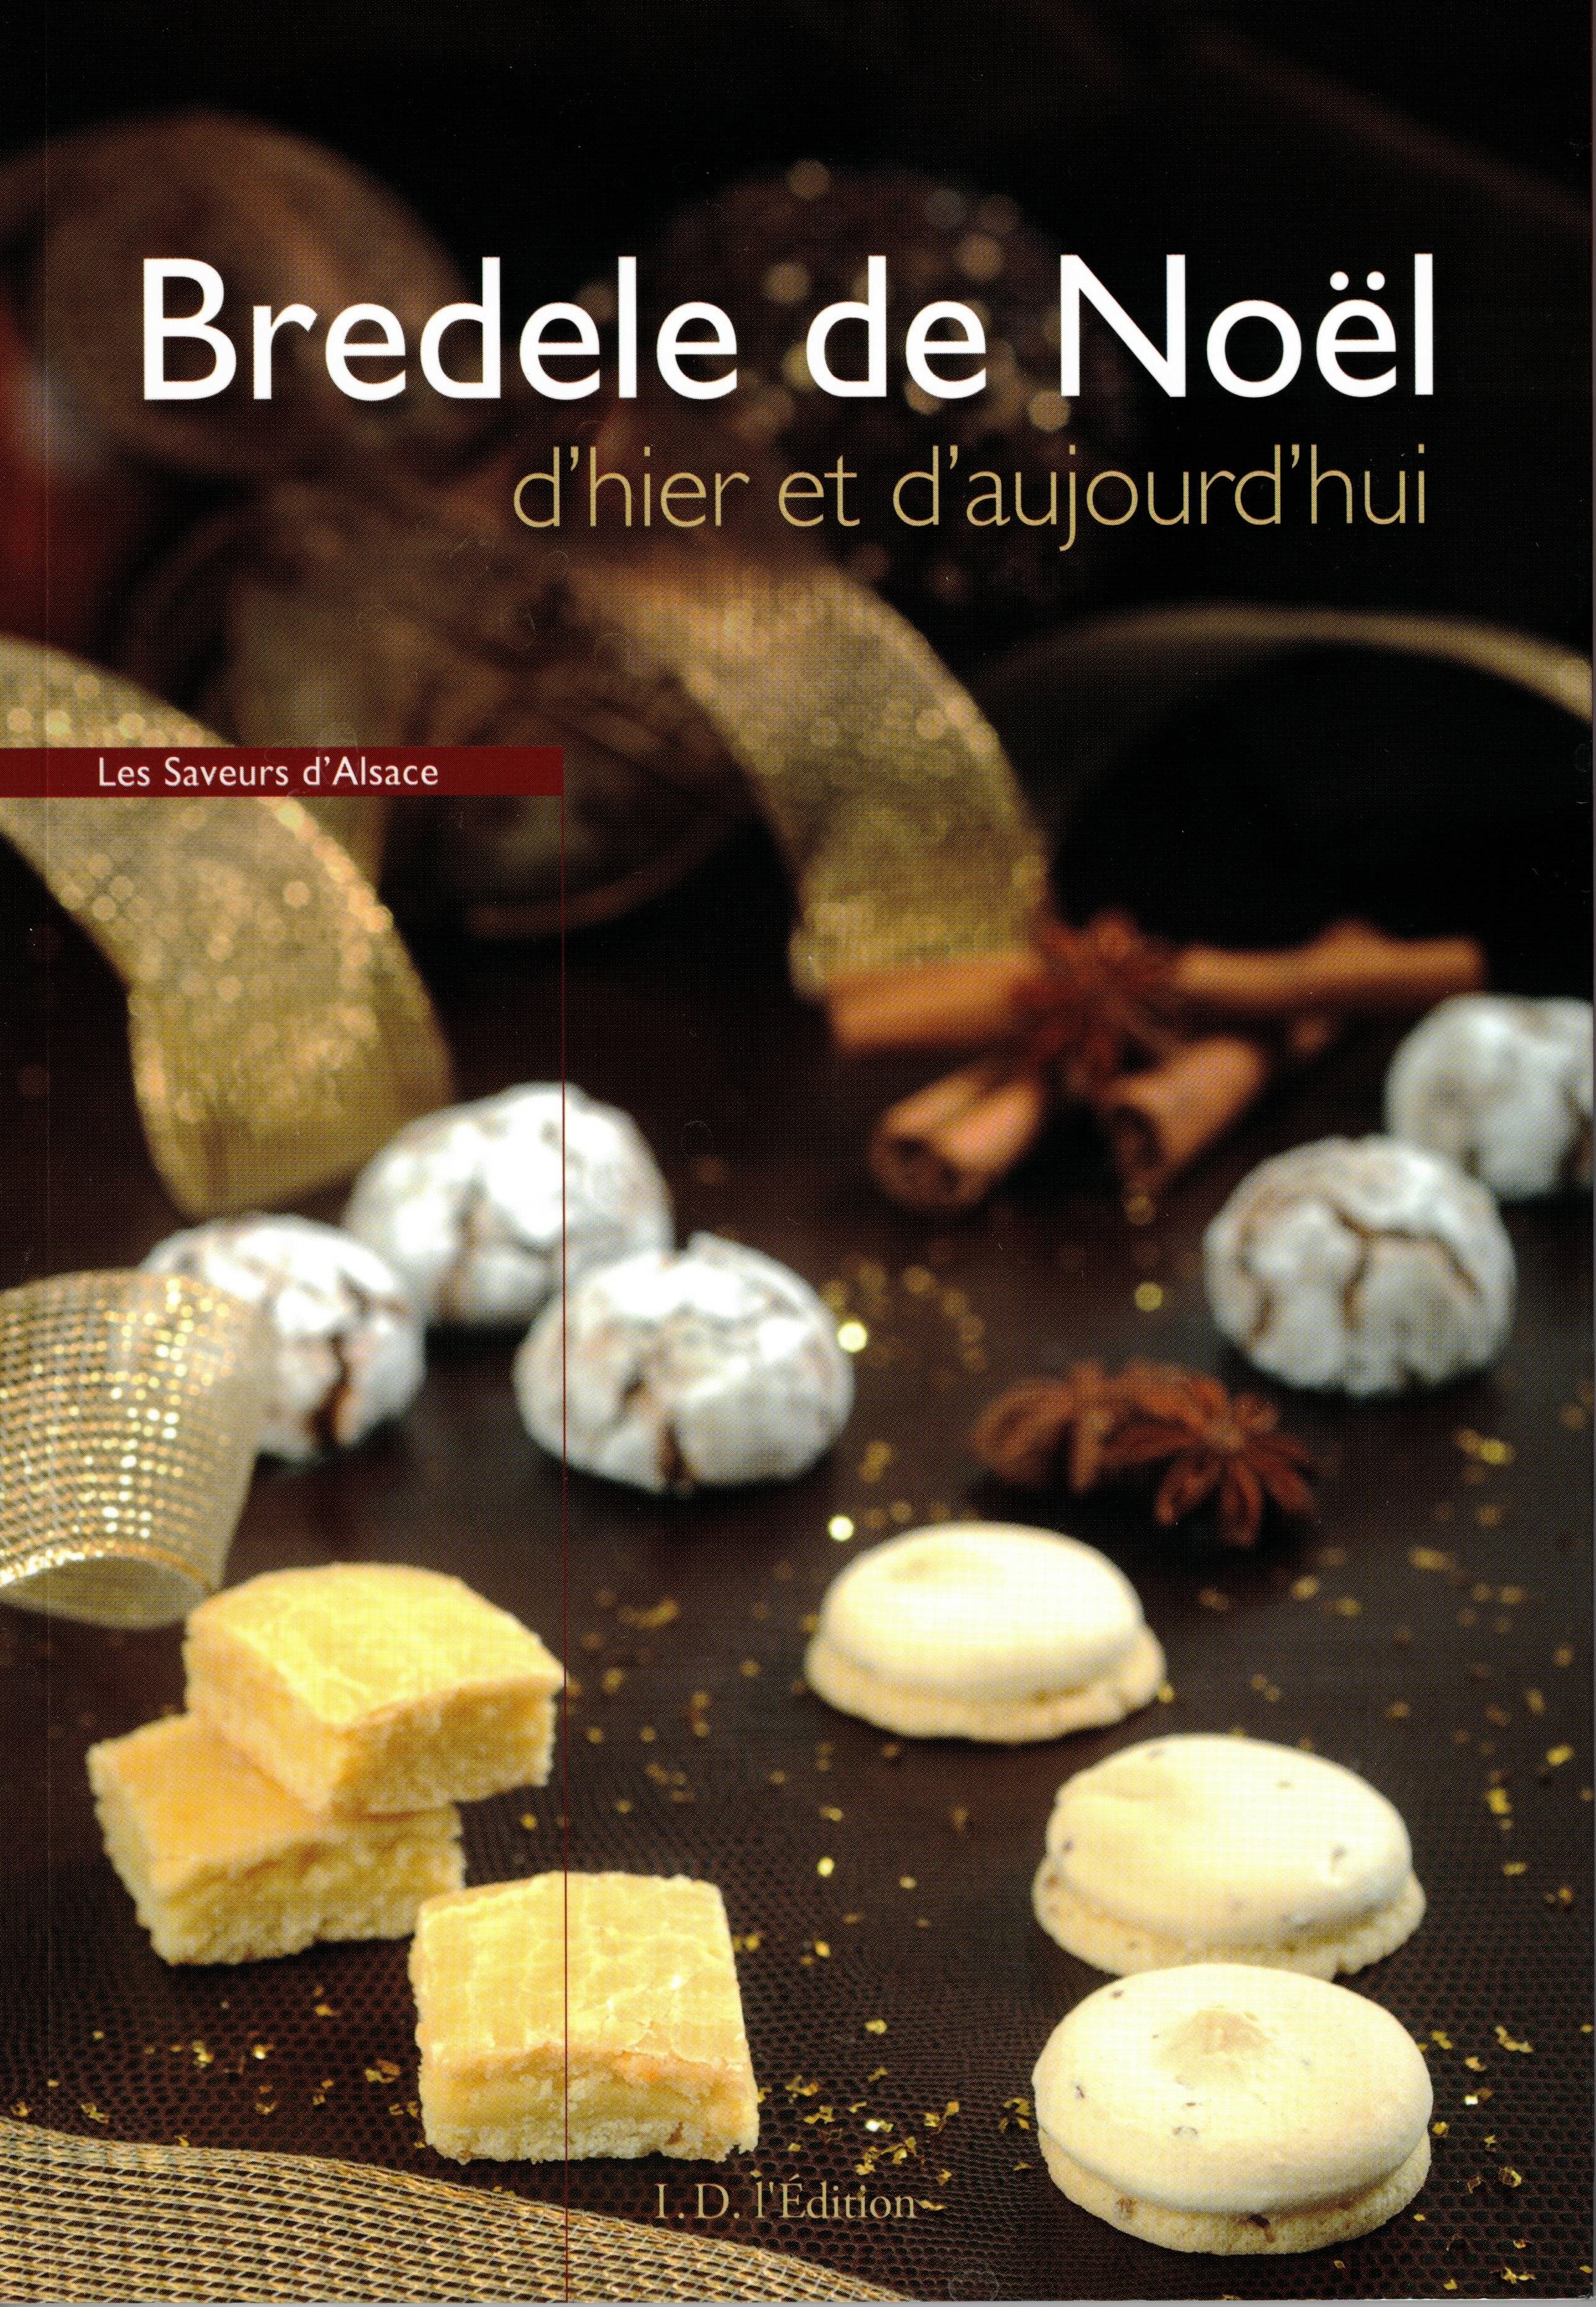 Bredele de Noël Saveurs d'Alsace Au Brin de Paille